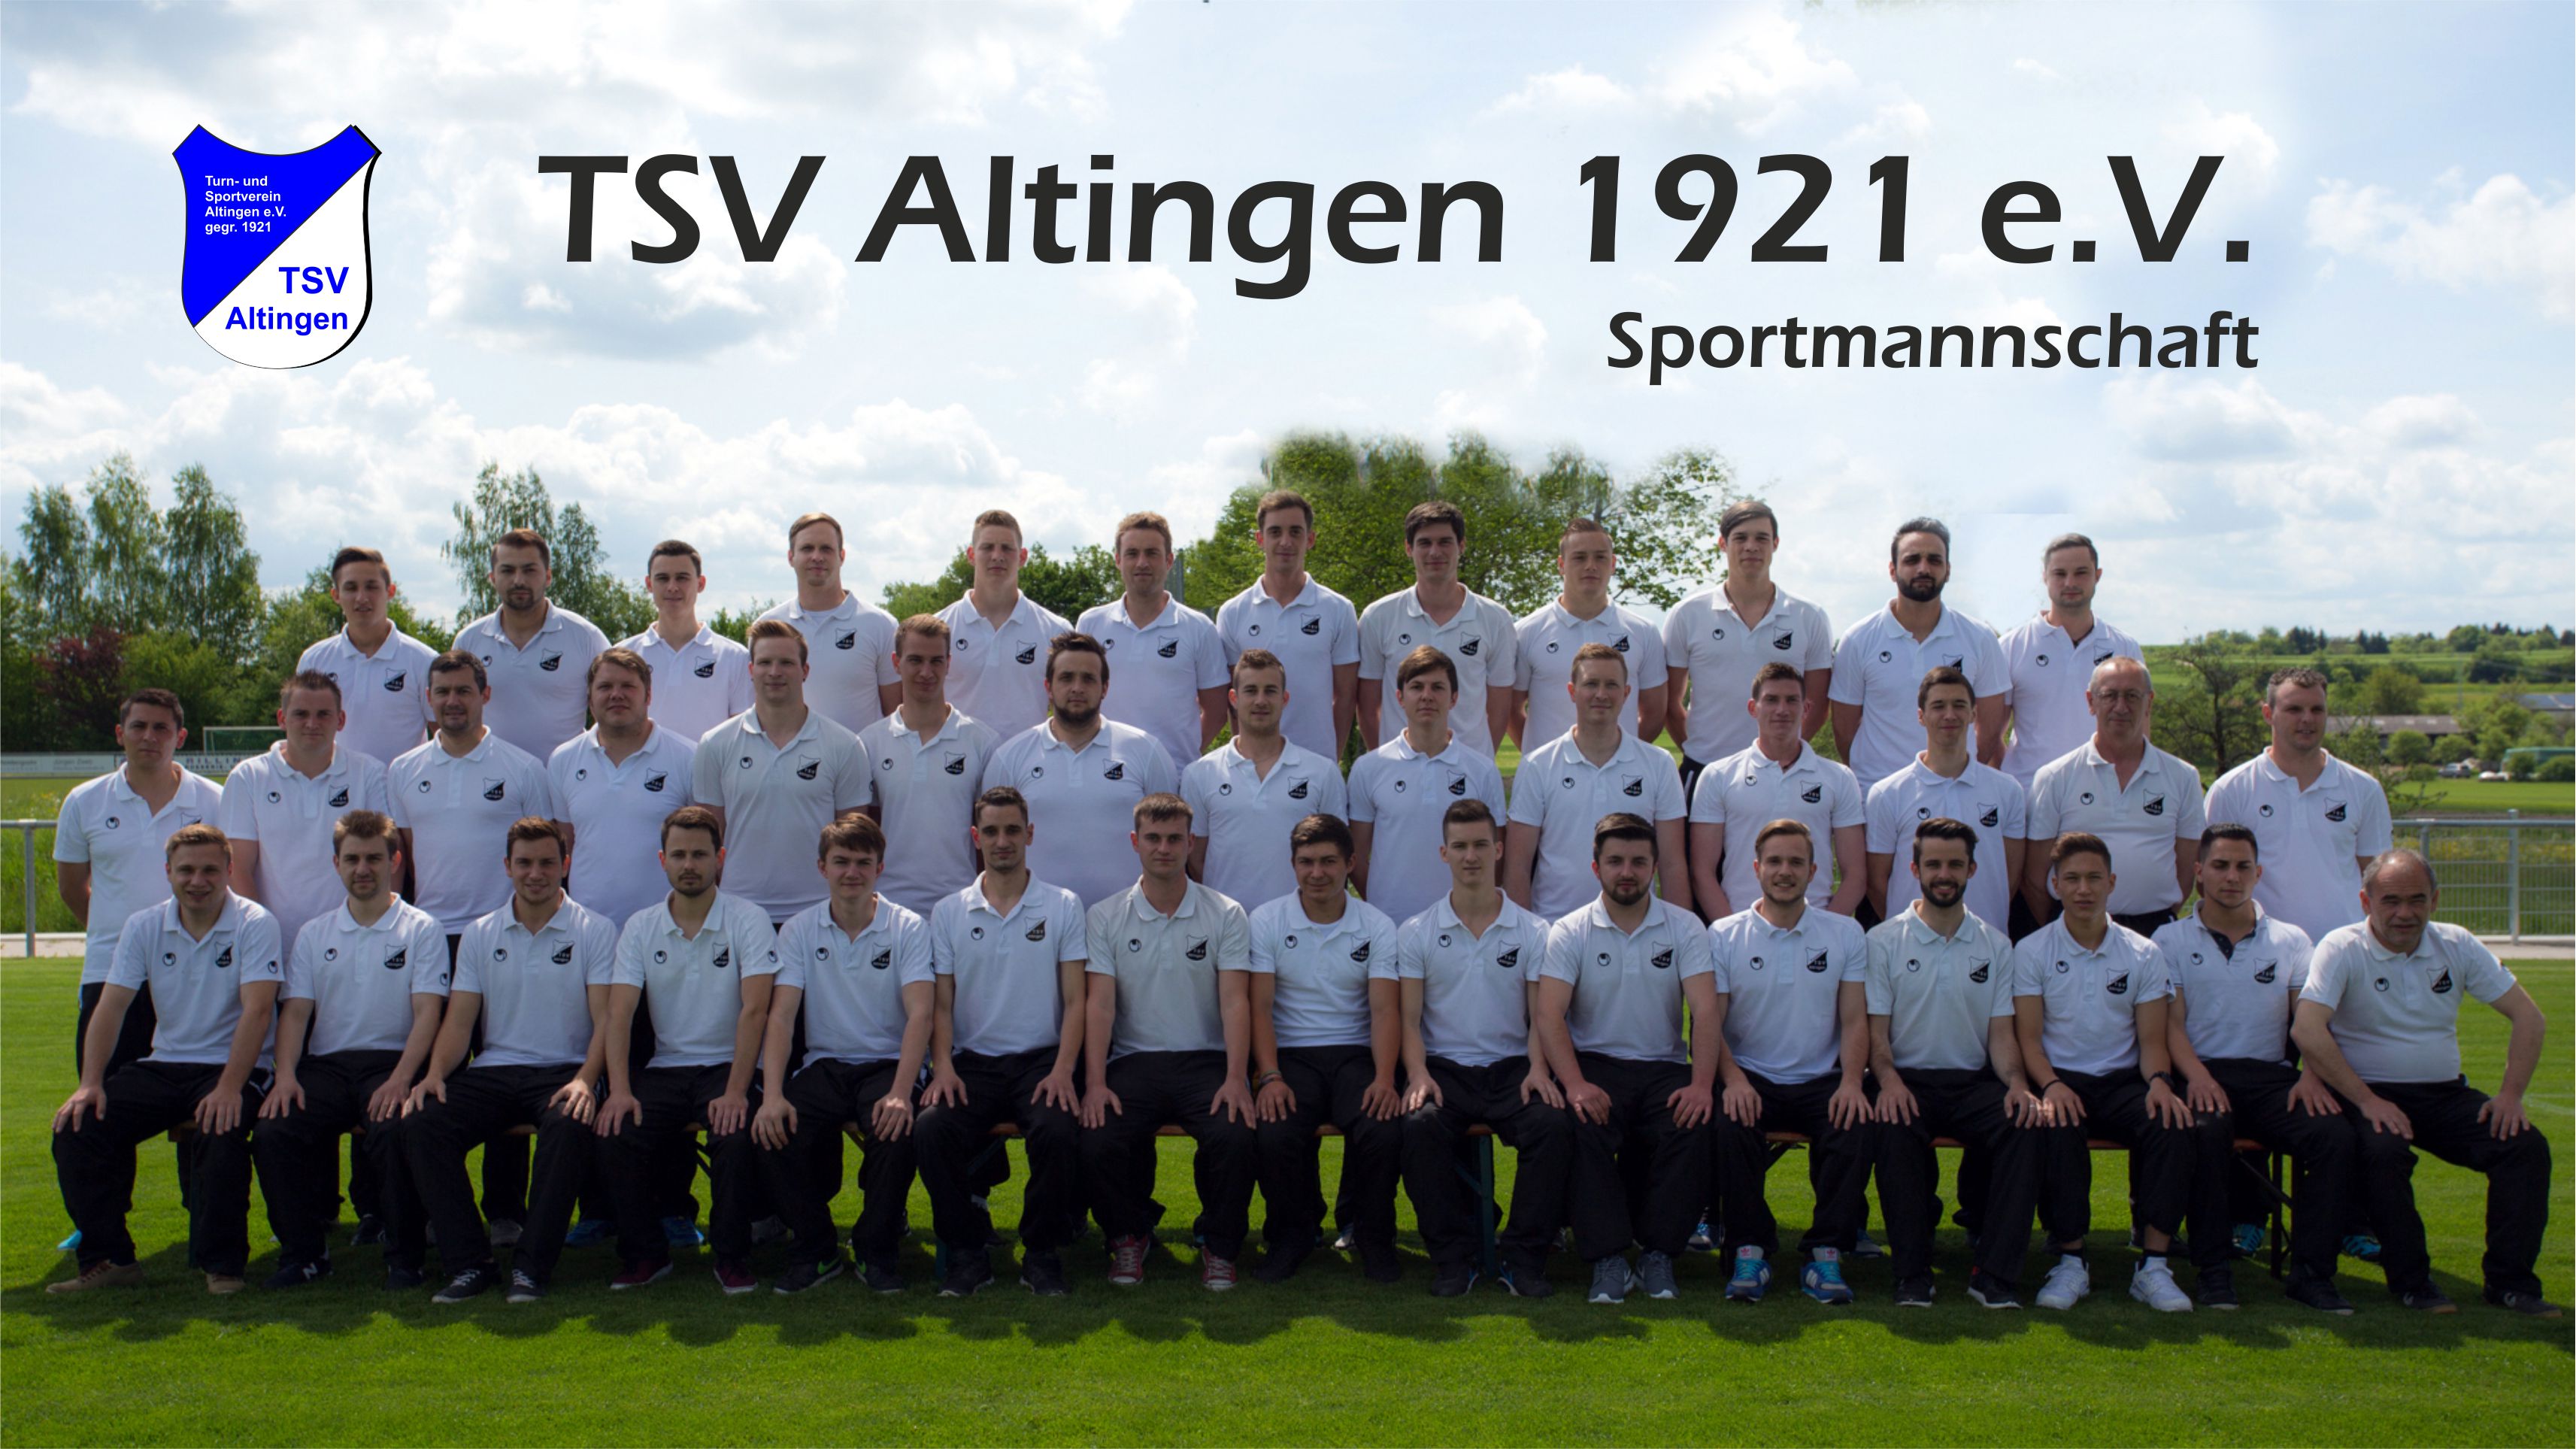 Mannschaftsfoto/Teamfoto von TSV Altingen